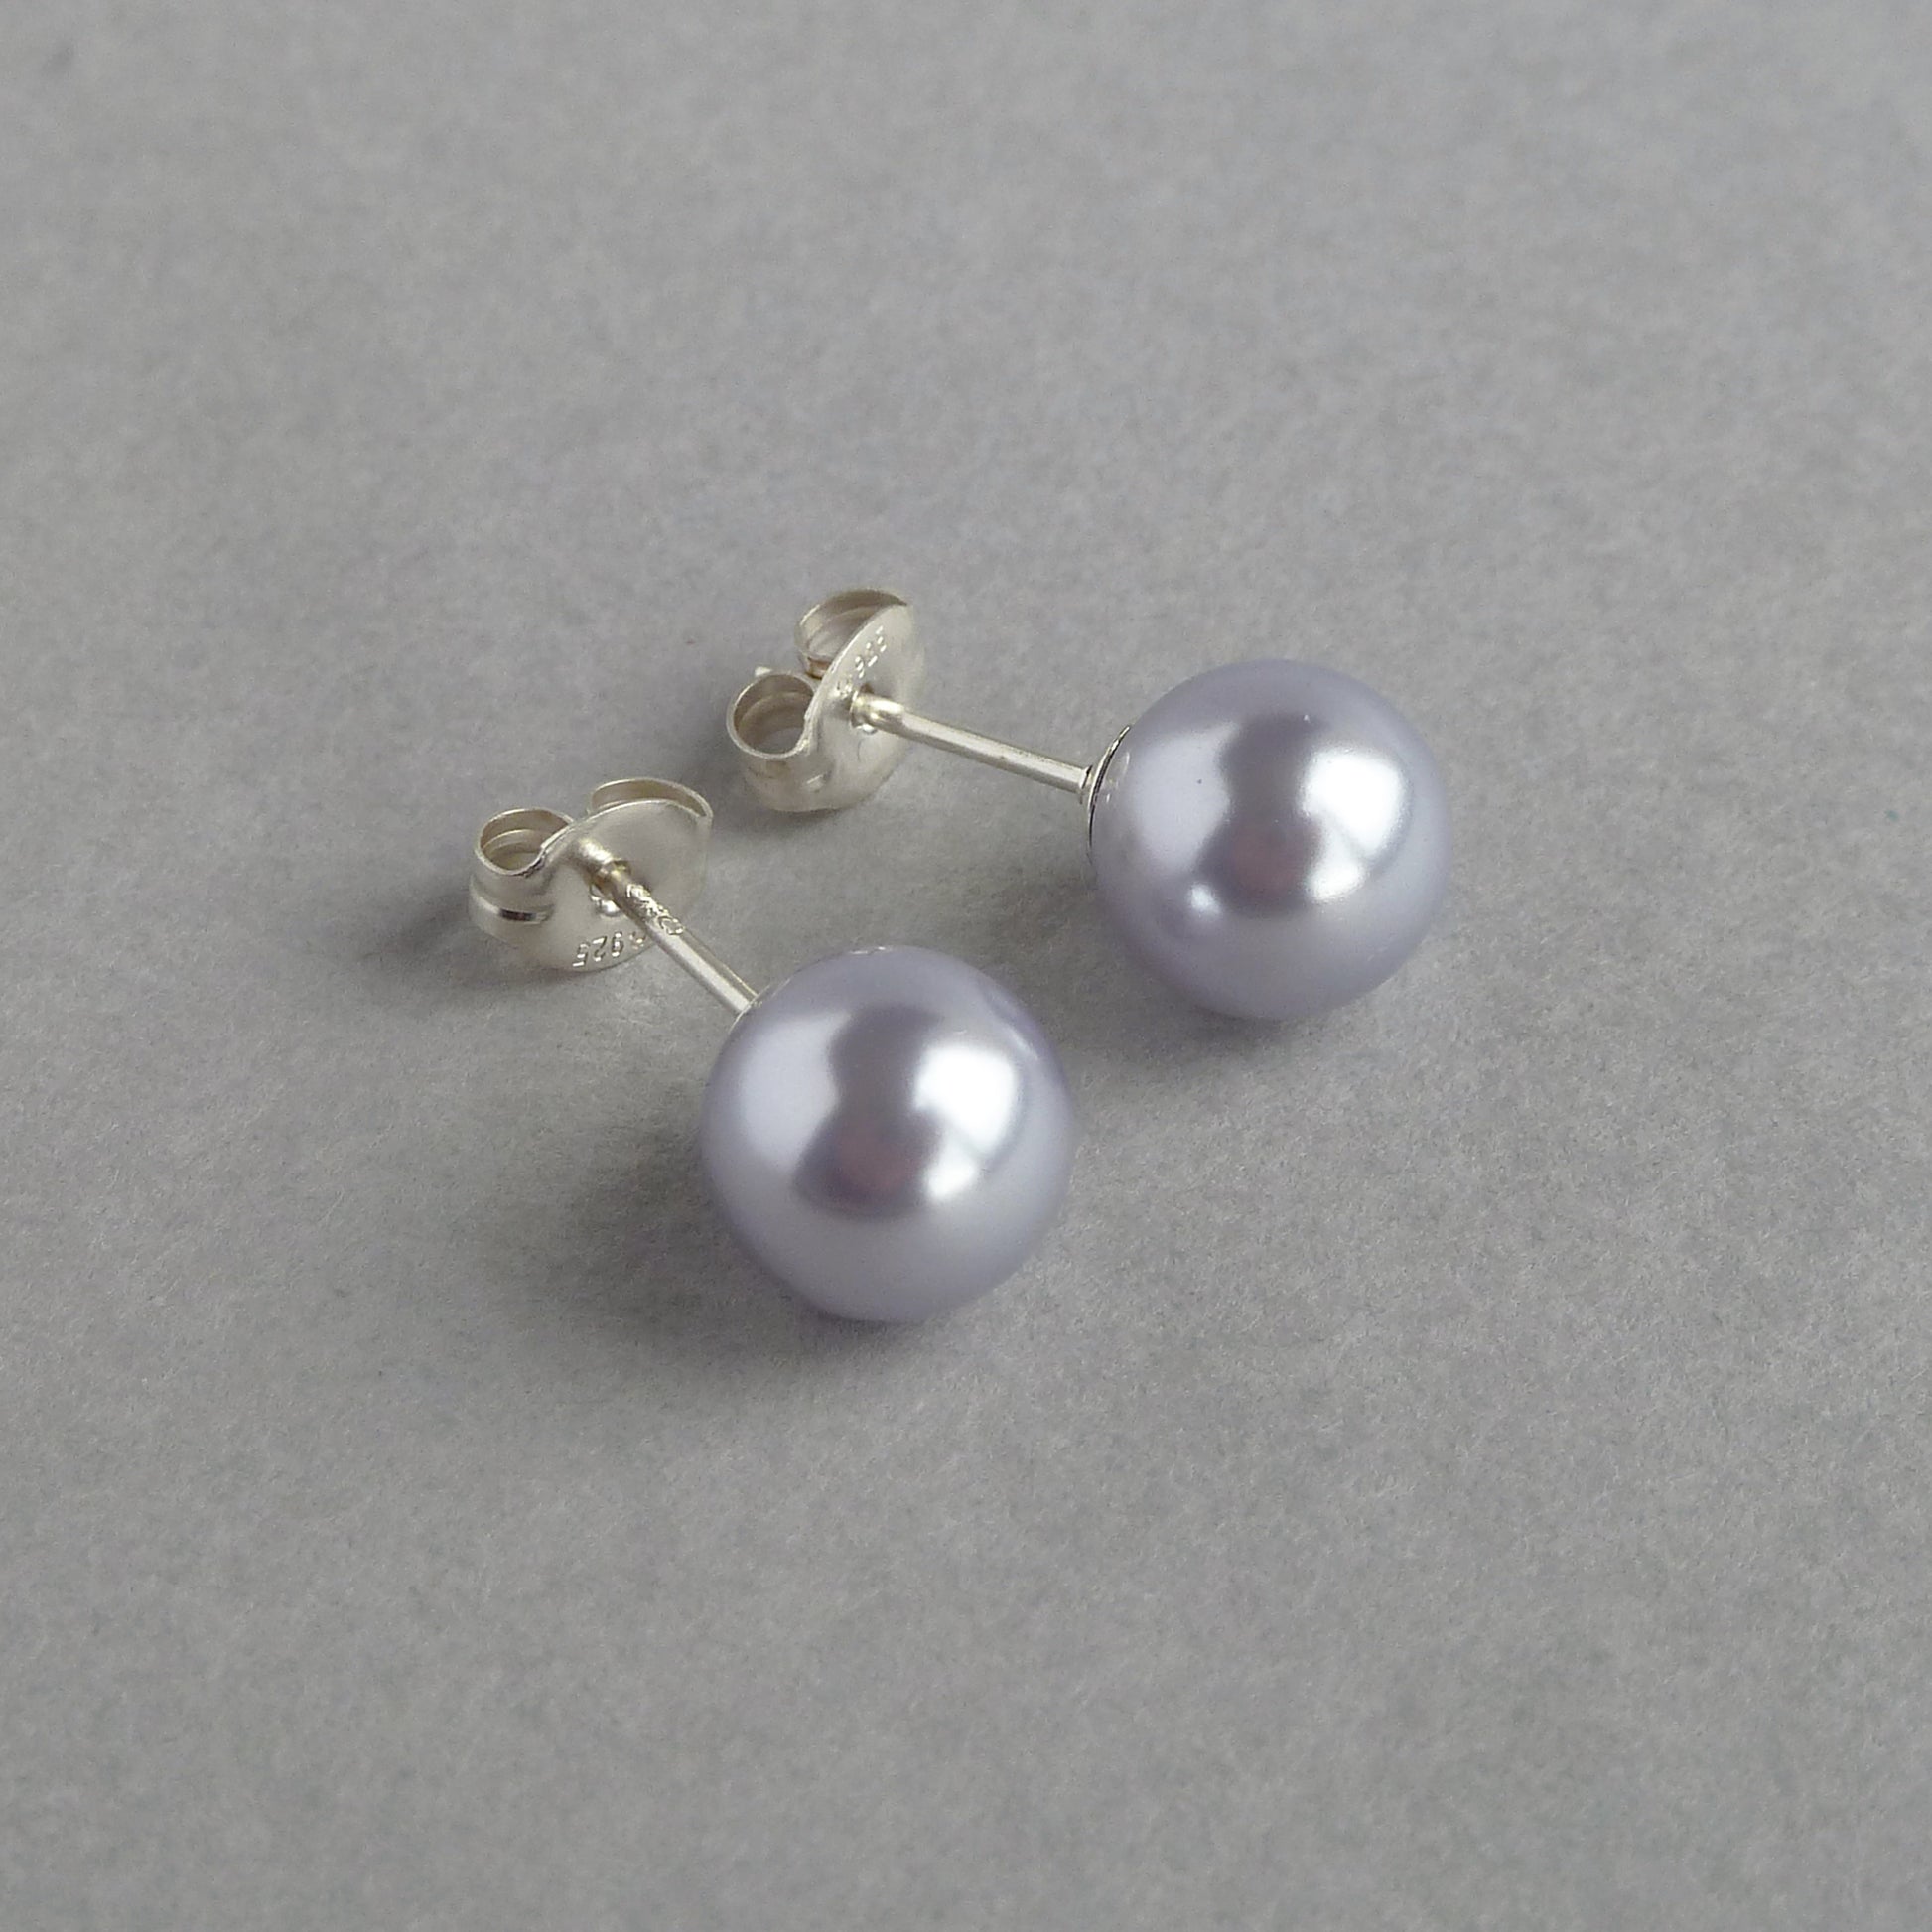 8mm lavender pearl stud earrings